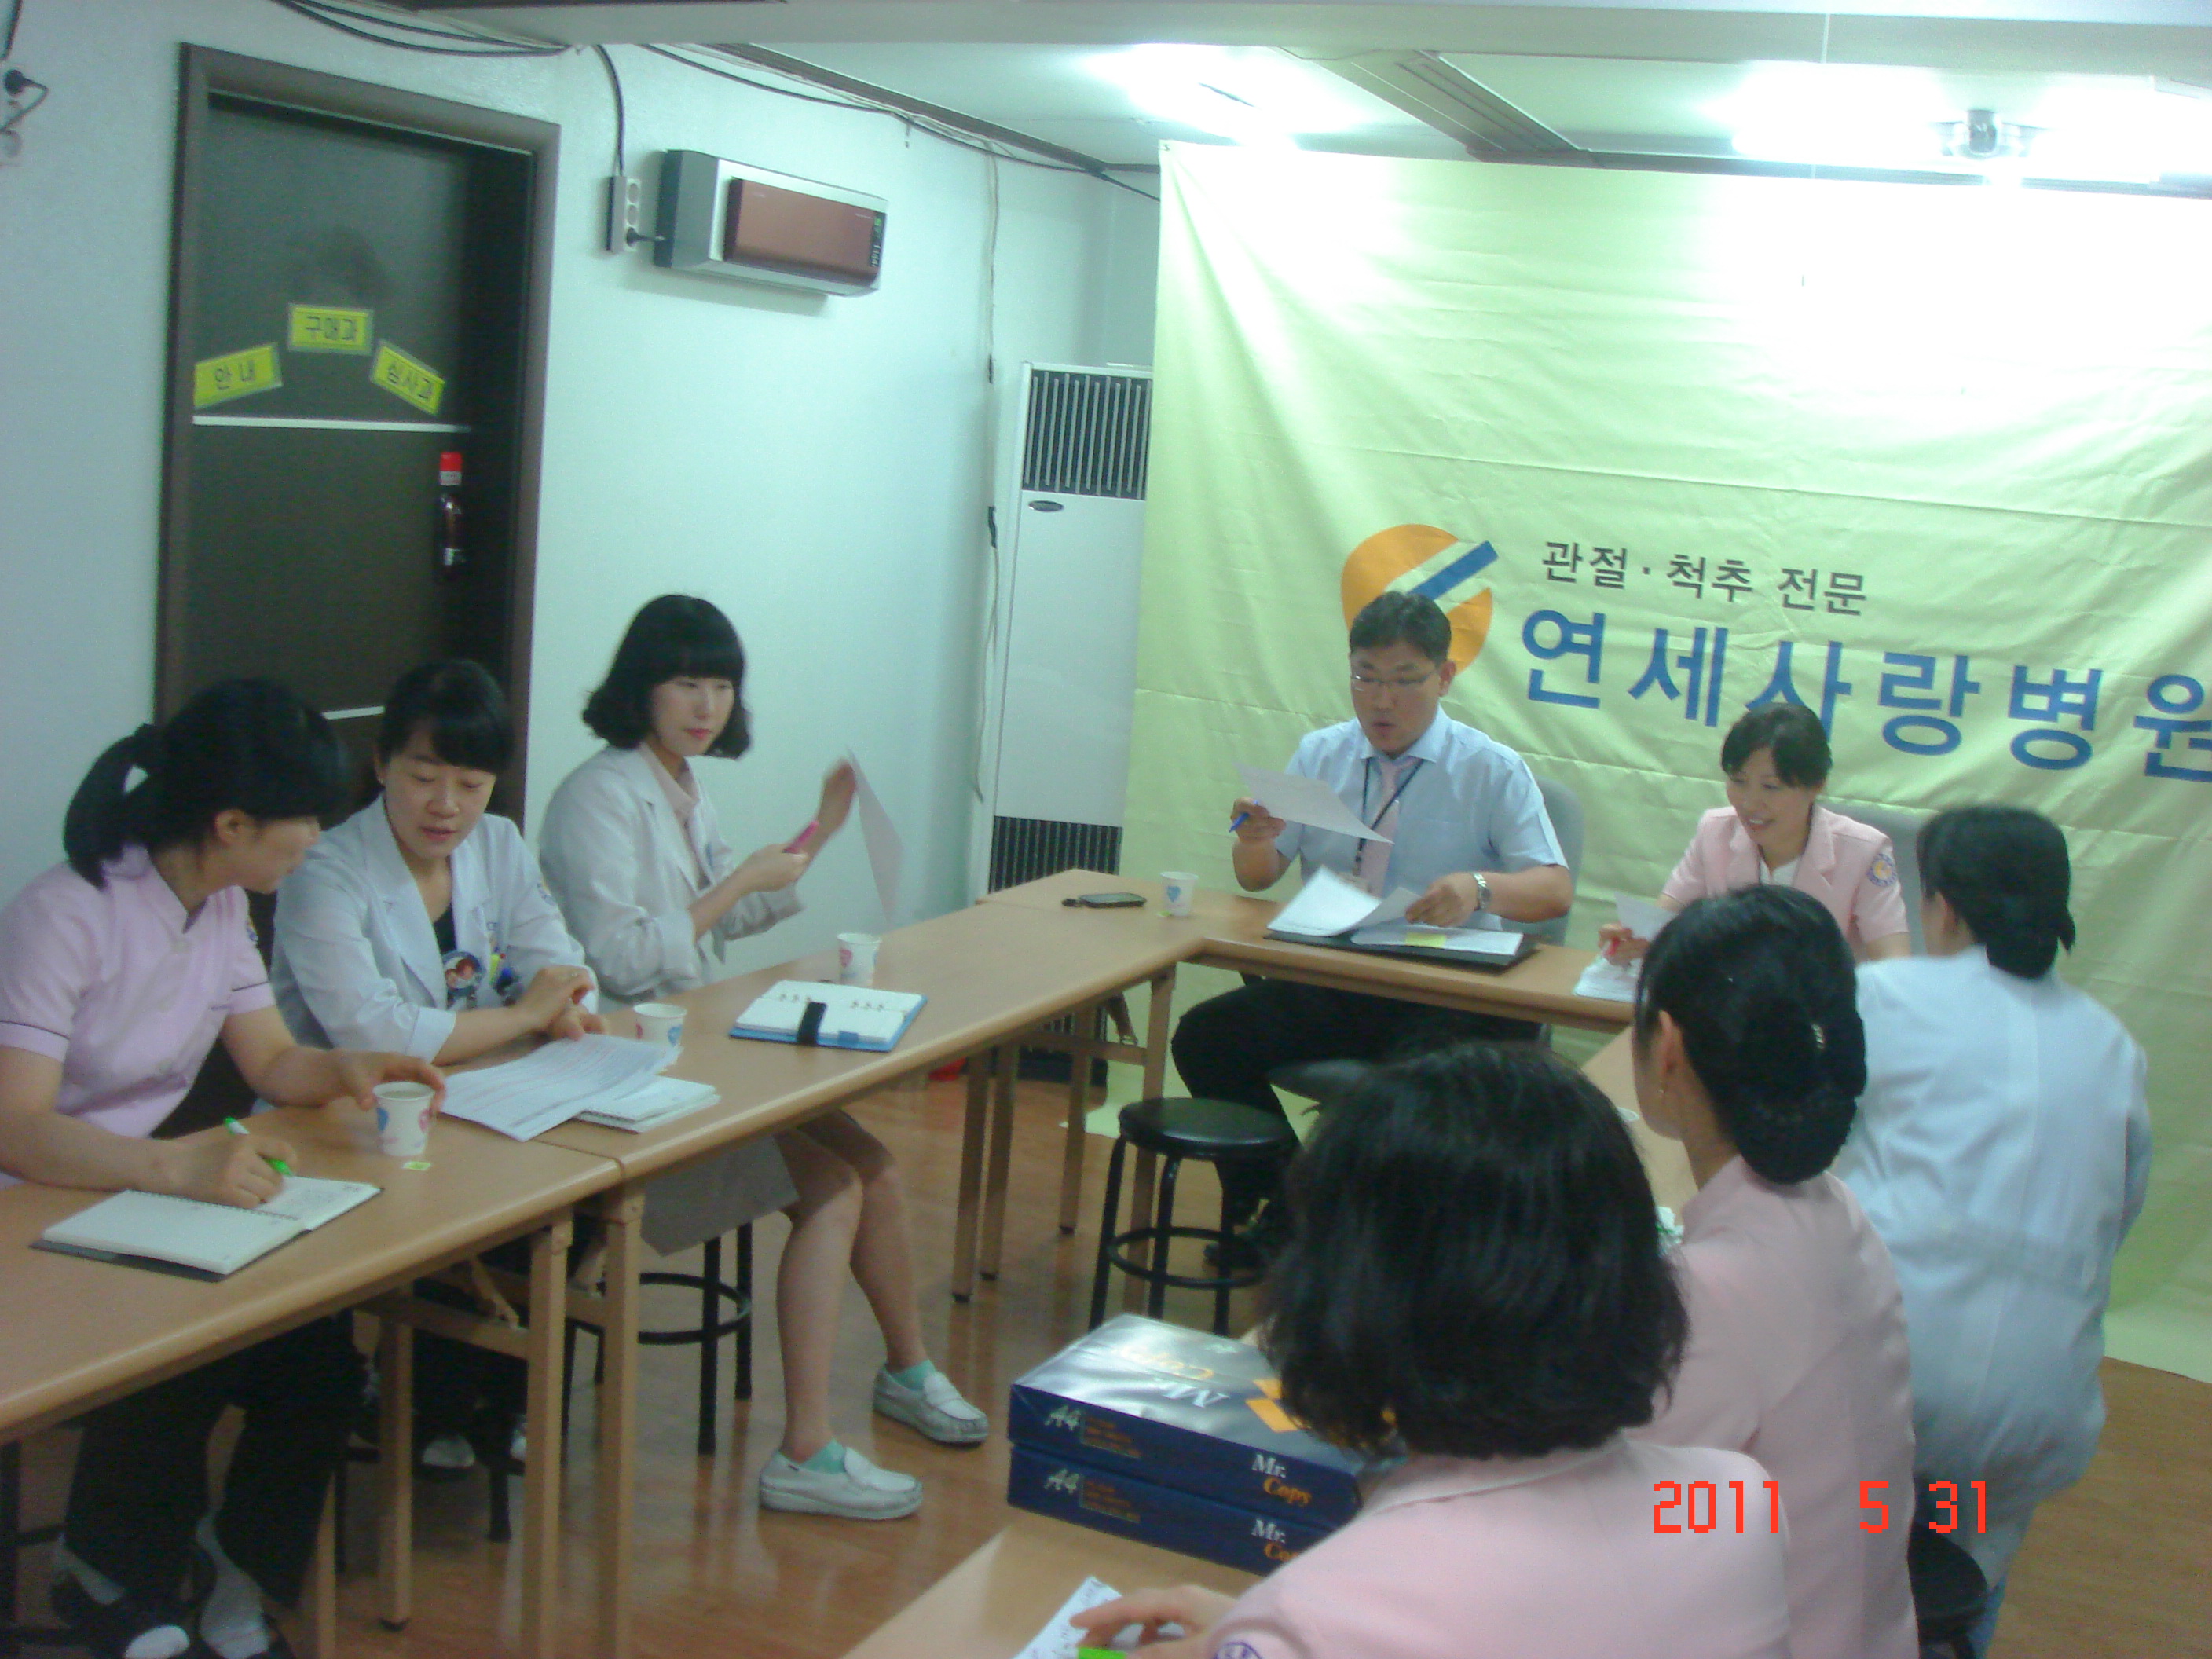 [강북점] 2011년 5월 31일 - 실무진 회의 개최 게시글의 3번째 첨부파일입니다.